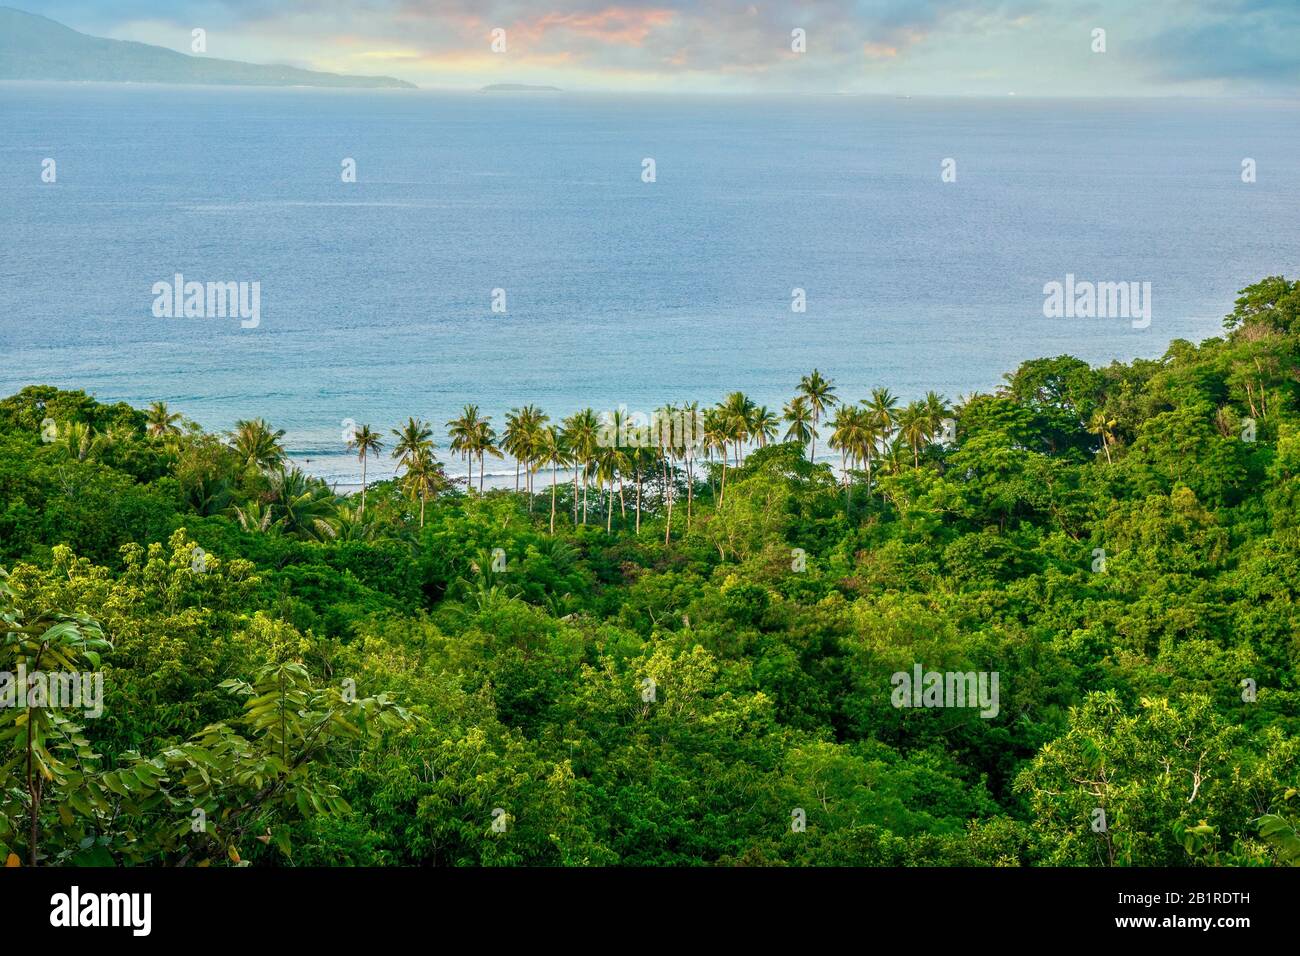 Ein Blick auf einen wunderschönen, üppigen Wald und Kokospalmen in der Nähe des Meeres auf einer tropischen Insel auf den Philippinen. Puerto Galera, Mindoro. Stockfoto